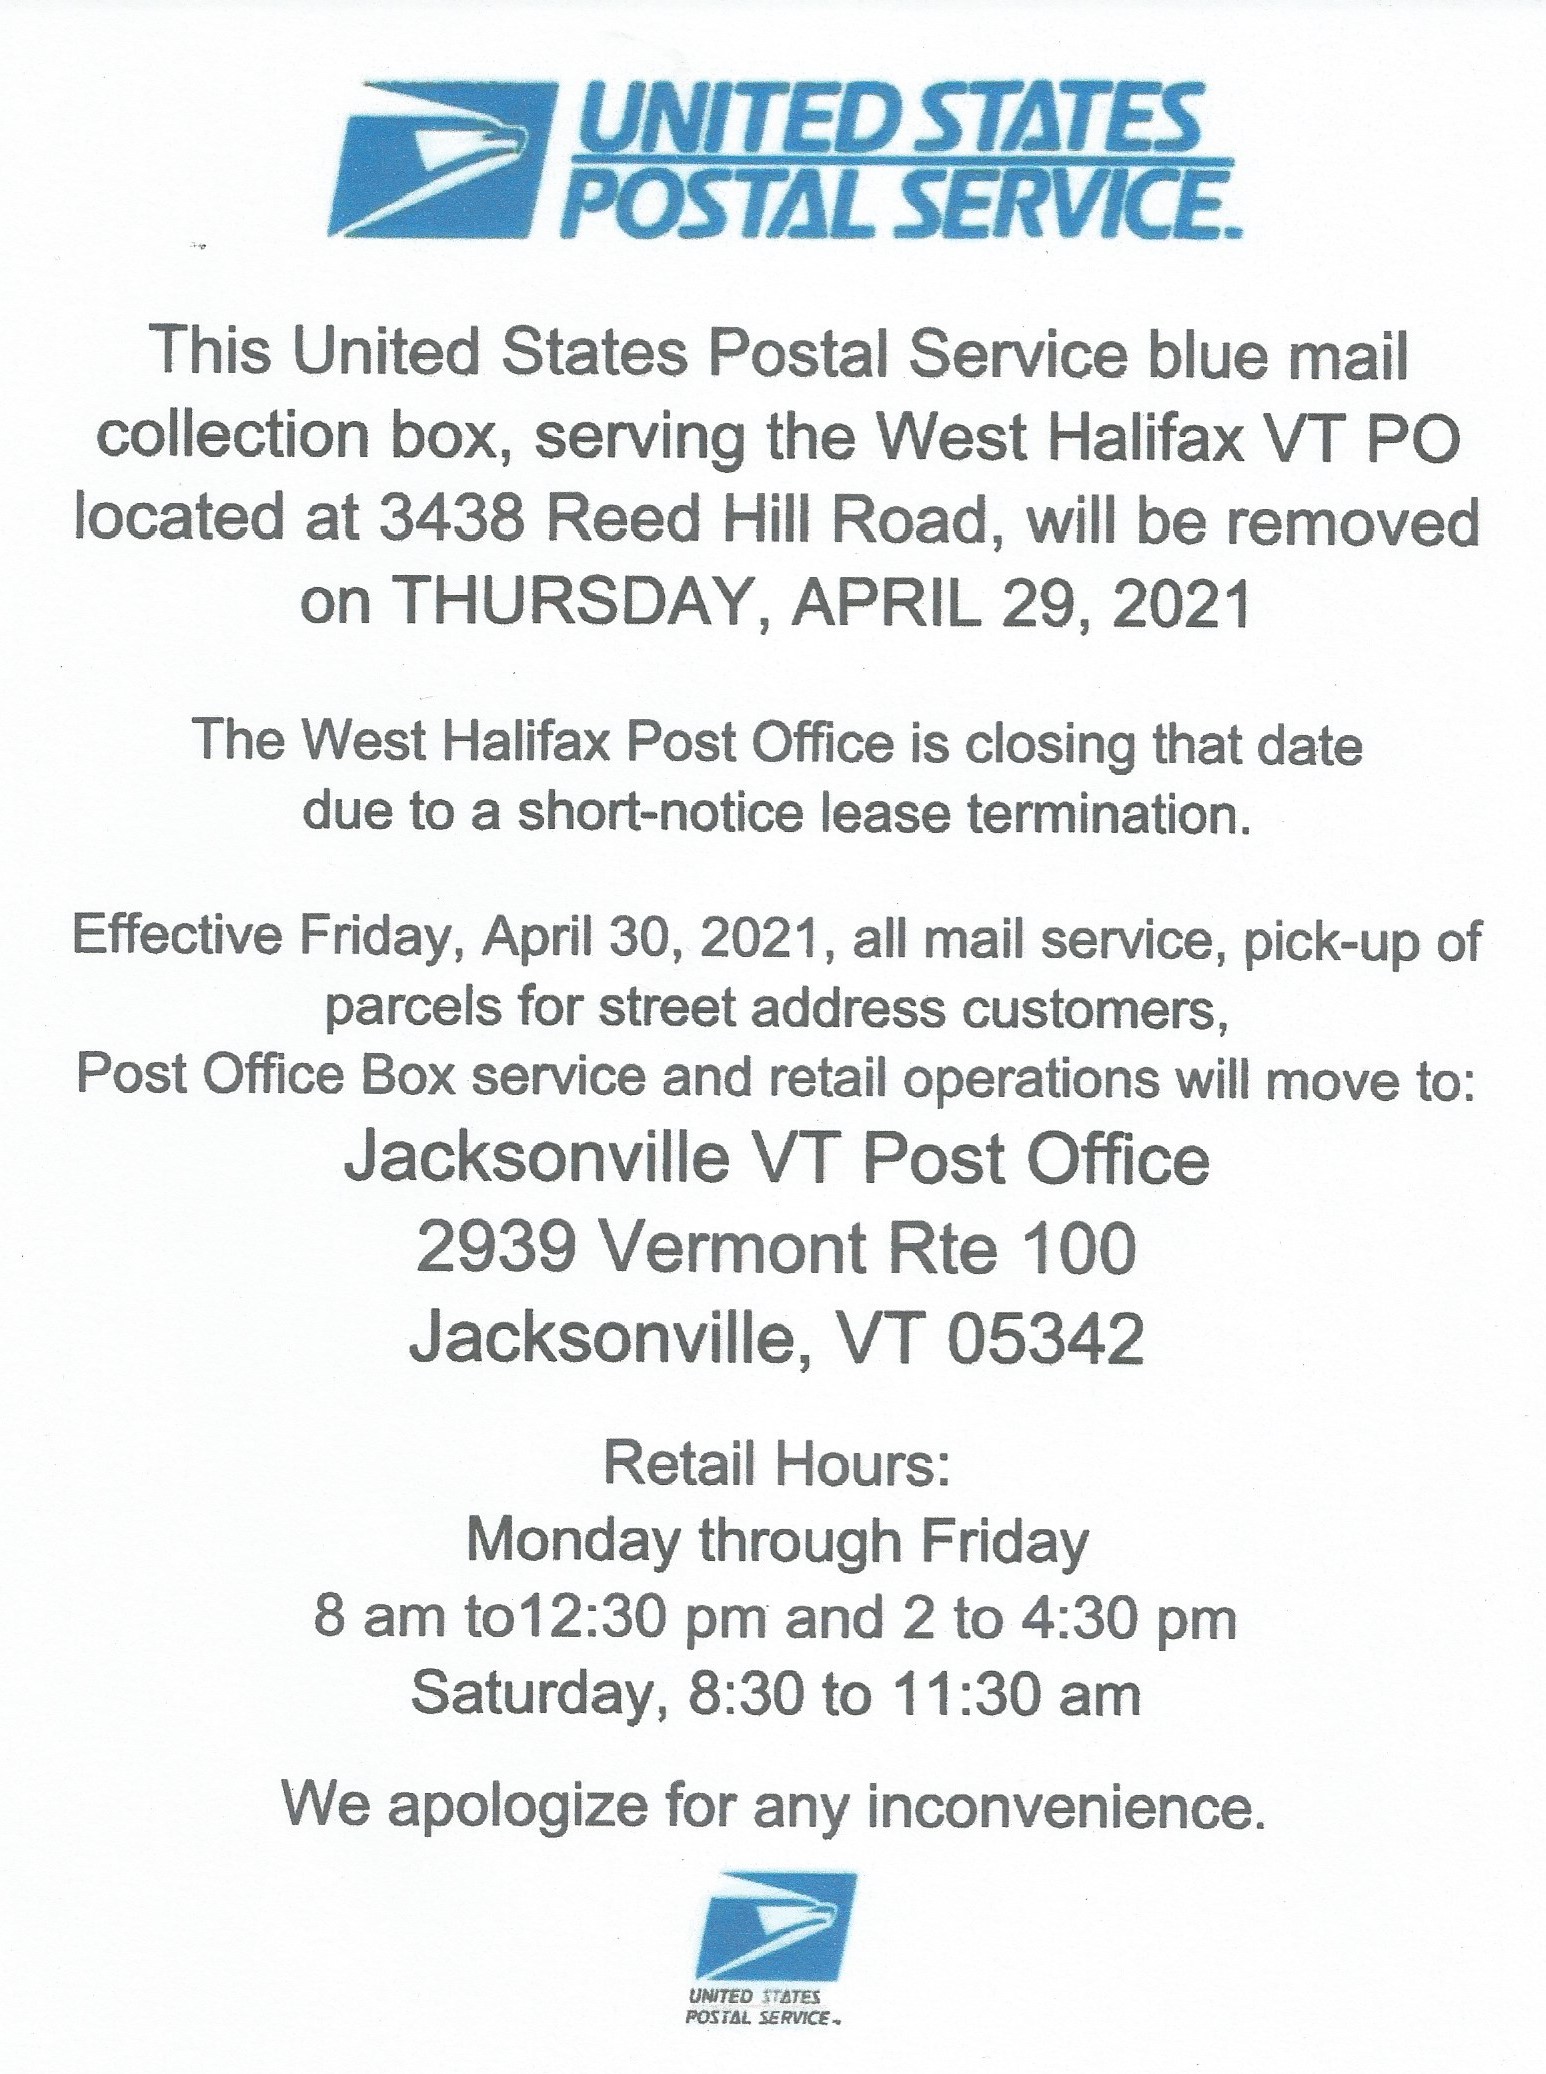 West Halifax Post Office Closure Halifax, Vermont Halifax, Vermont